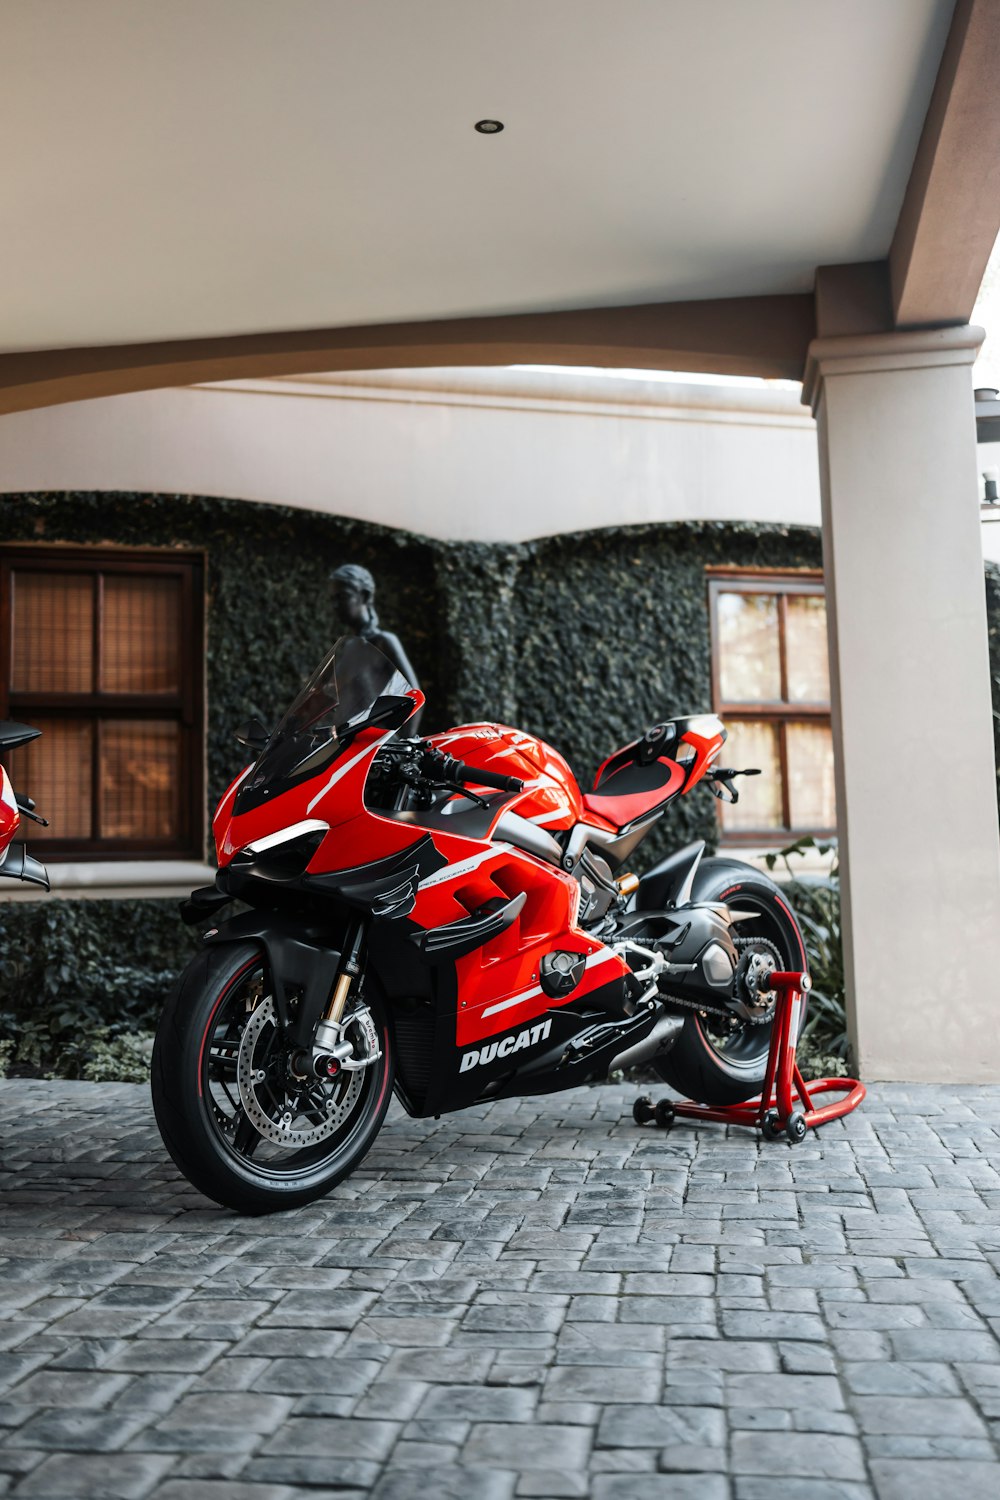 Una motocicleta roja estacionada frente a un edificio